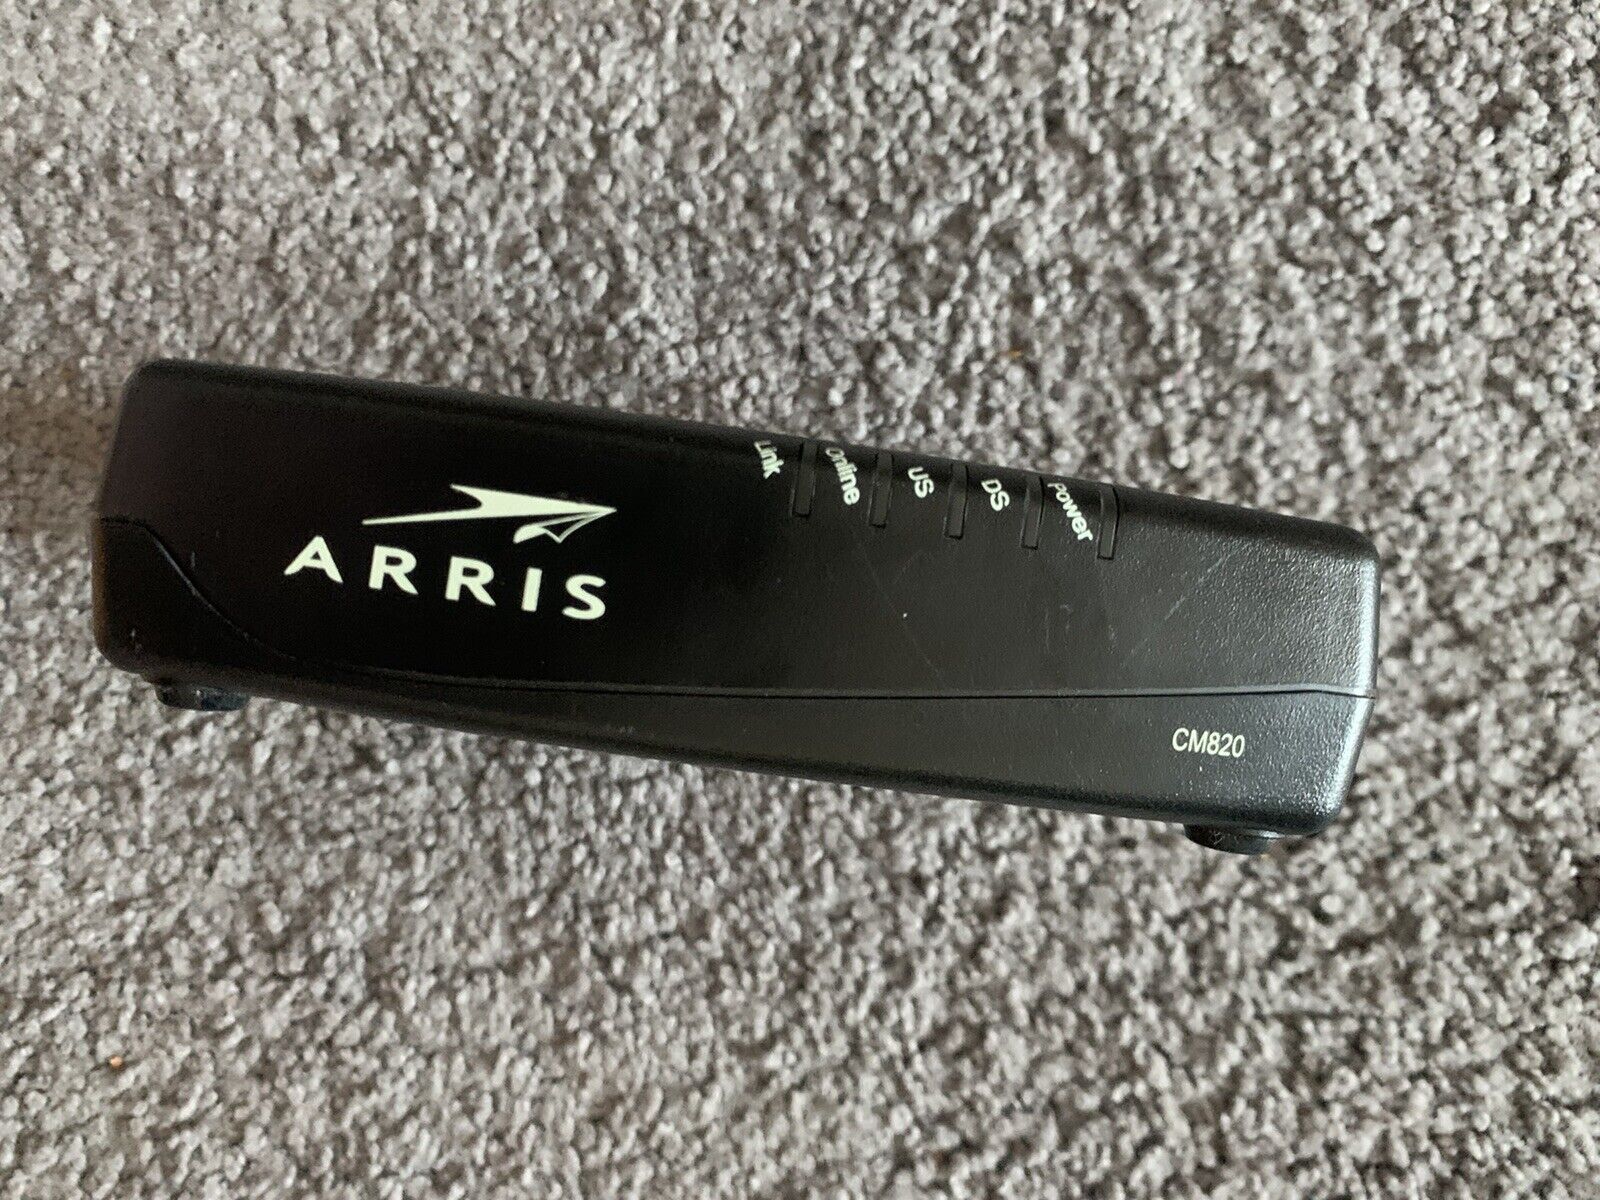 ARRIS CM820A/CT DOCSIS 3.0 Cable Modem.  Modem Only NO POWER CORD